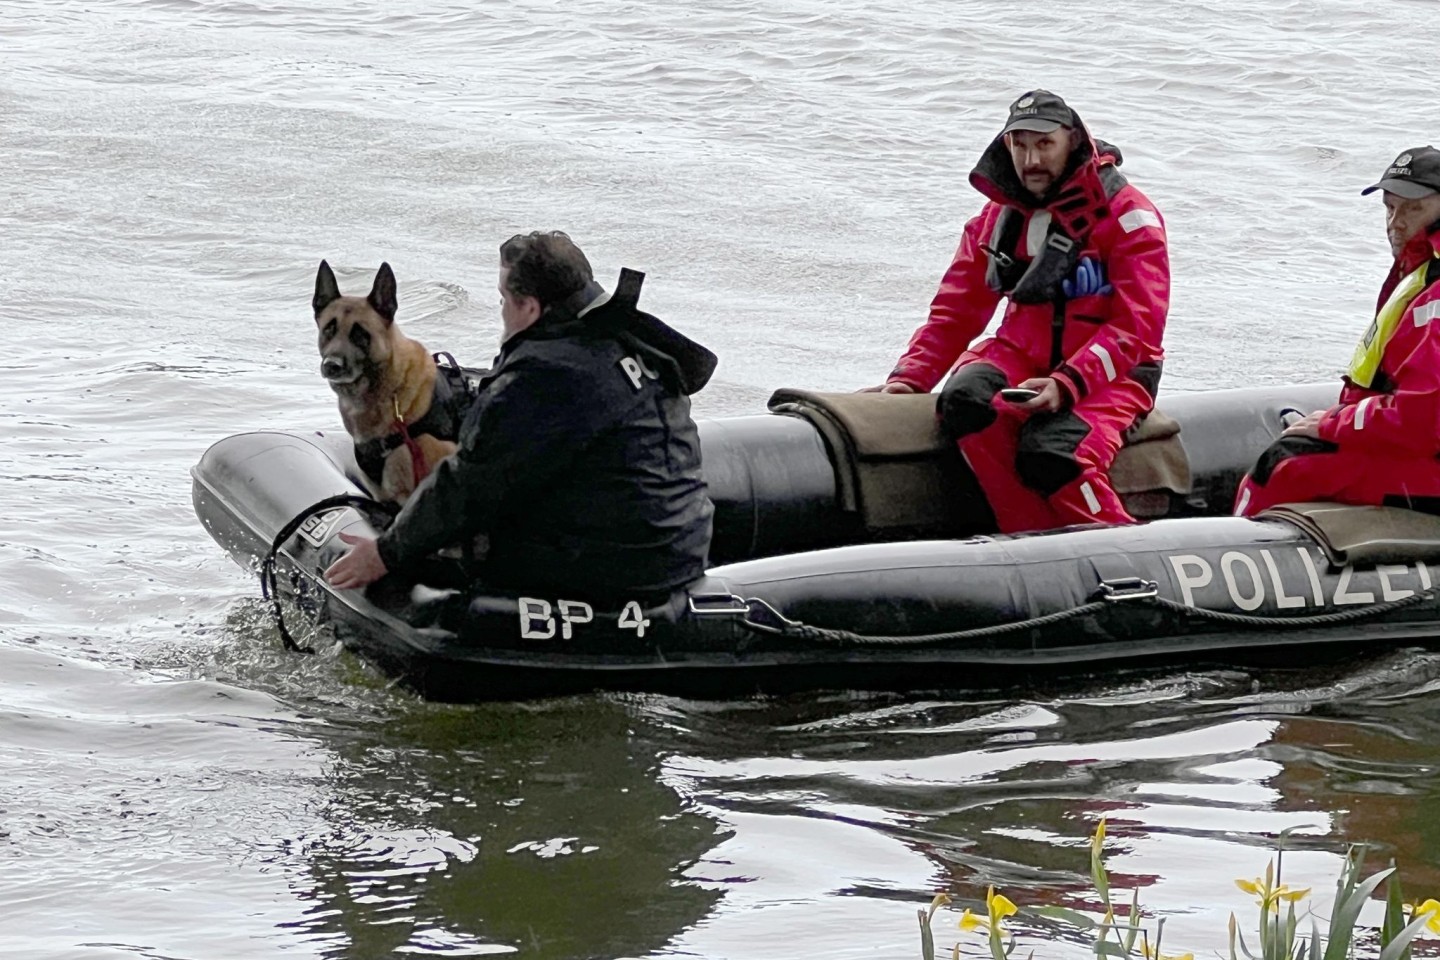 Einsatzkräfte sind mit einem Boot der Polizei im Uferbereich der Donau unterwegs.